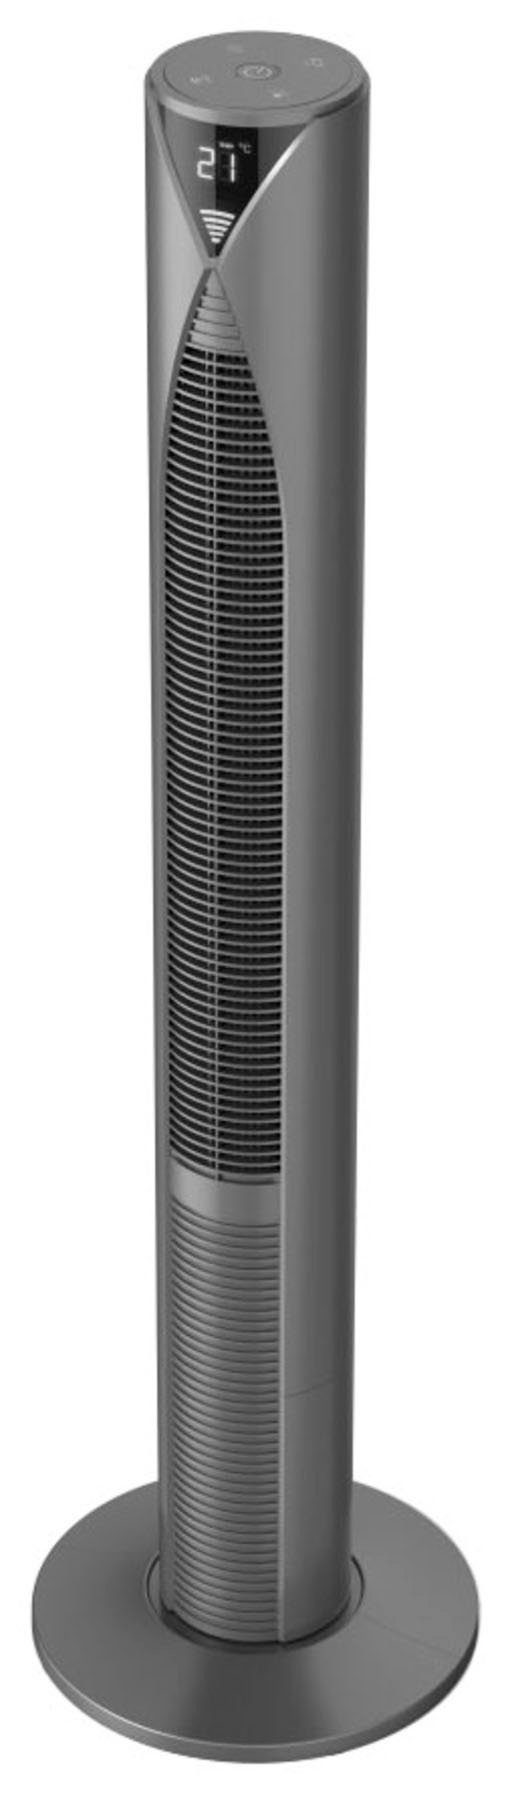 Hama Standventilator Smarter Standventilator 3 Fernbedienung Geschwindigkeitsstufen, Standby 117cm, Modus energiesparend Timer, Turm, mit mit Displayanzeige